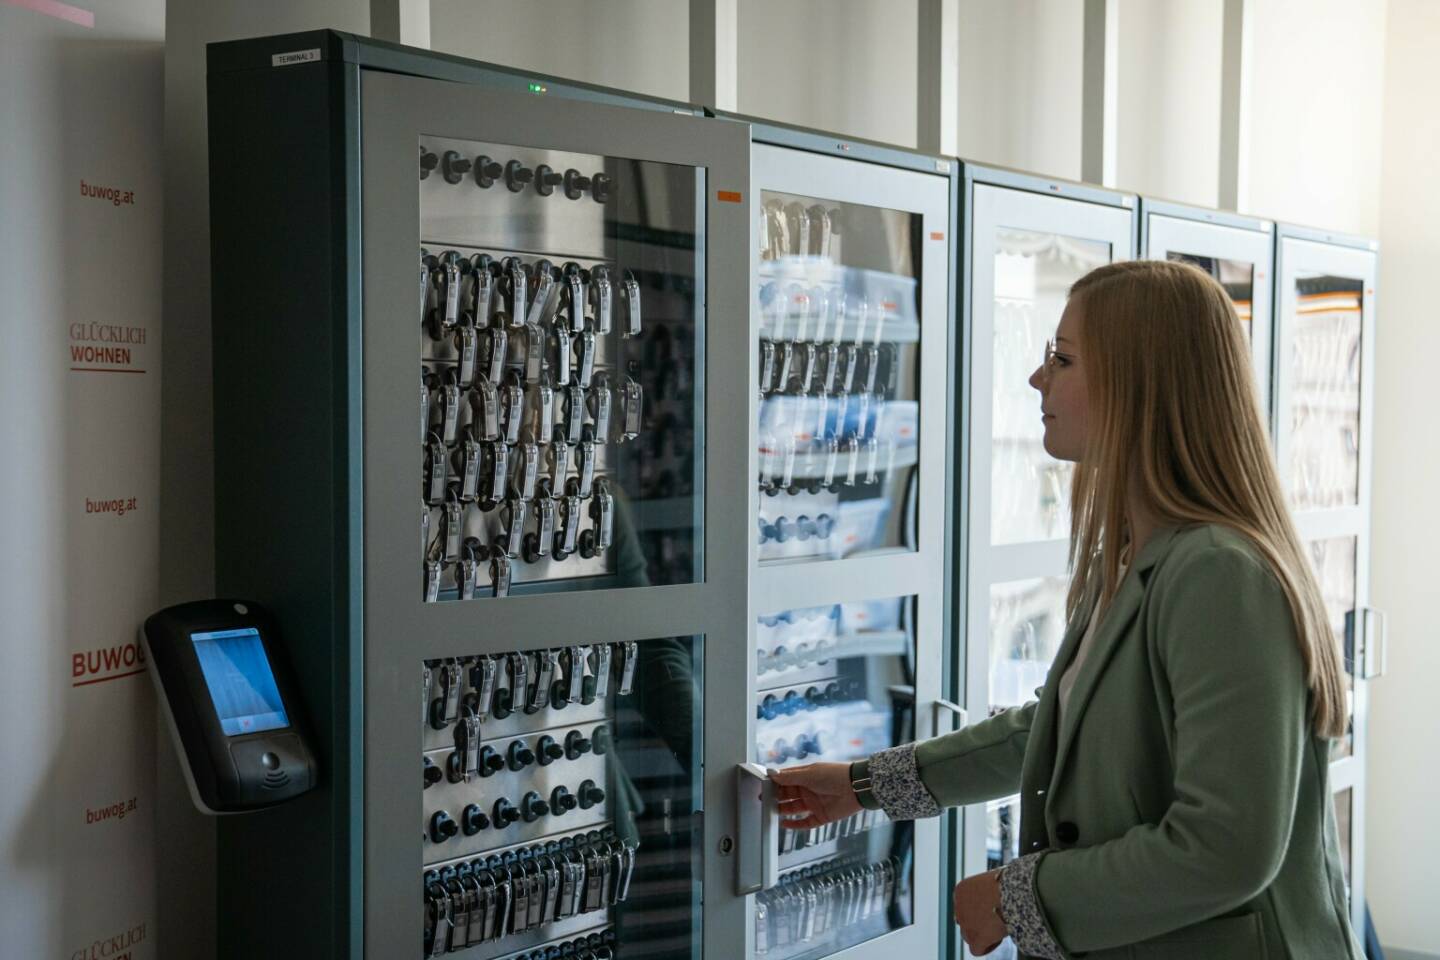 Im Sommer dieses Jahres wurde für den BUWOG-Bestand in Wien ein digitales Schlüsselmanagement implementiert. Mit der Lösung von ESSECCA hat man ein flexibles, sicheres und verlässliches System gefunden, das individuell auf die Bedürfnisse der BUWOG zugeschnitten ist. Für die Aufbewahrung der Schlüssel kommen Schlüsselschränke zum Einsatz, die über elektronische Terminals bedient werden. 
© ESSECCA/rkmedia